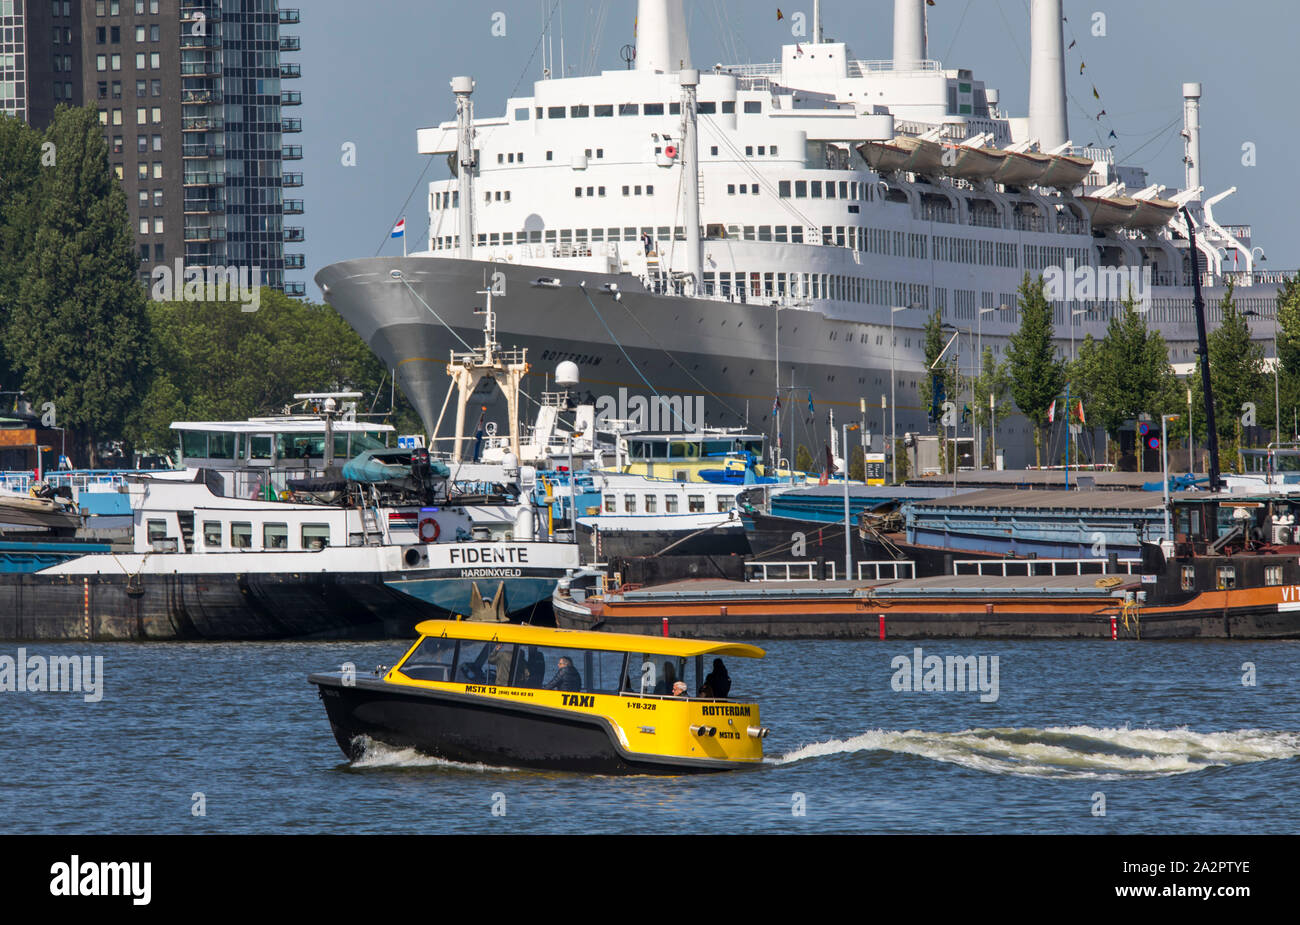 Der Hafen von Rotterdam, Niederlande, ehemalige Passagierschiff, die holland-amerika-Lijn, SS Rotterdam, liegt, wie ein Hotel Schiff in den Hafen, Wassertaxi, Stockfoto